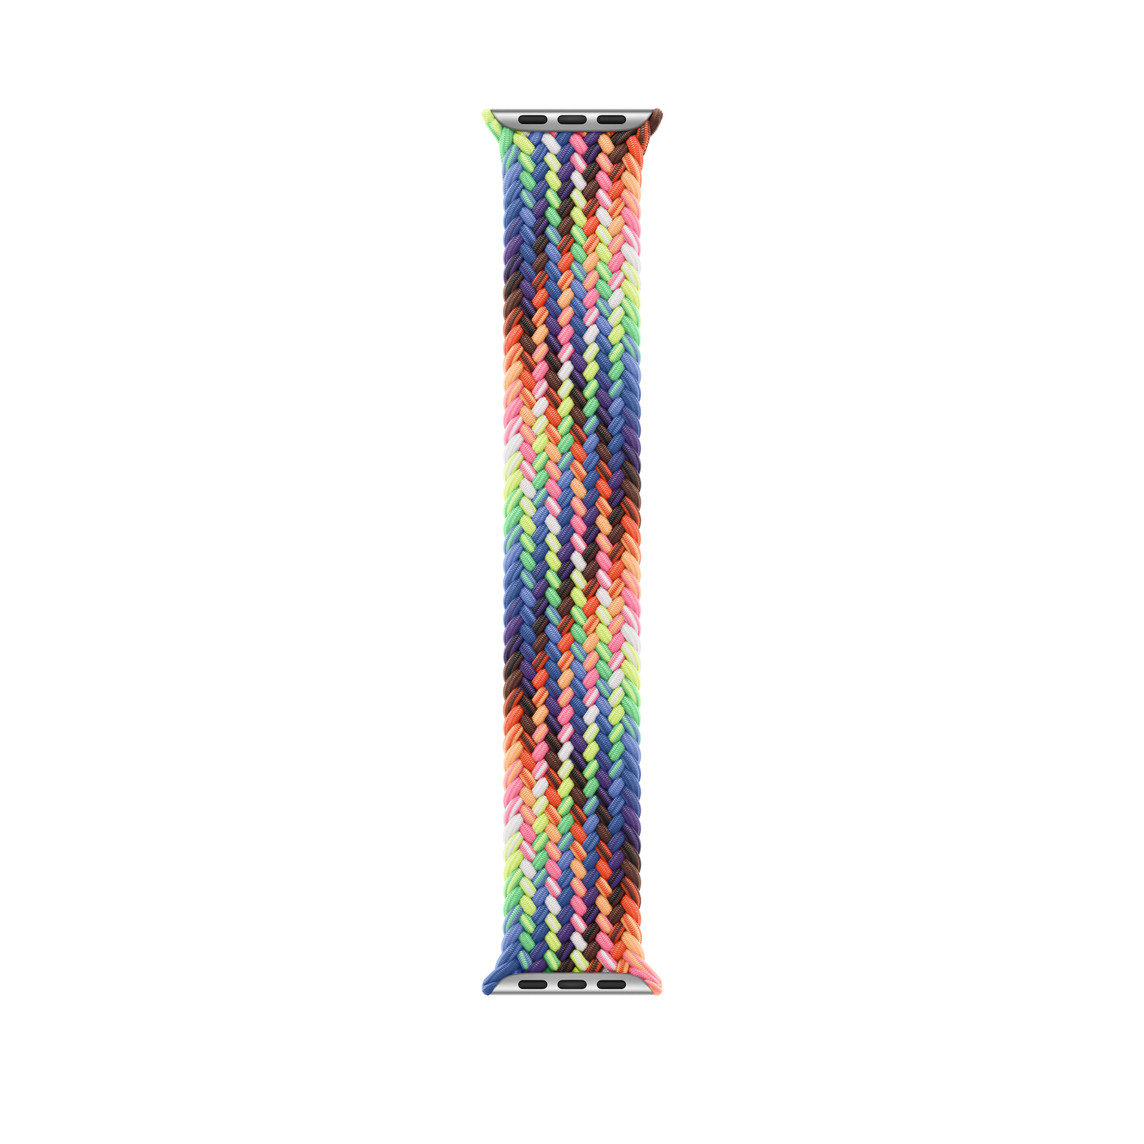 Punottu Pride Edition Solo Loop ‑ranneke, sateenkaarenvärisen Pride-lipun inspiroima neonvärinen punos, ei lukkoja tai solkia